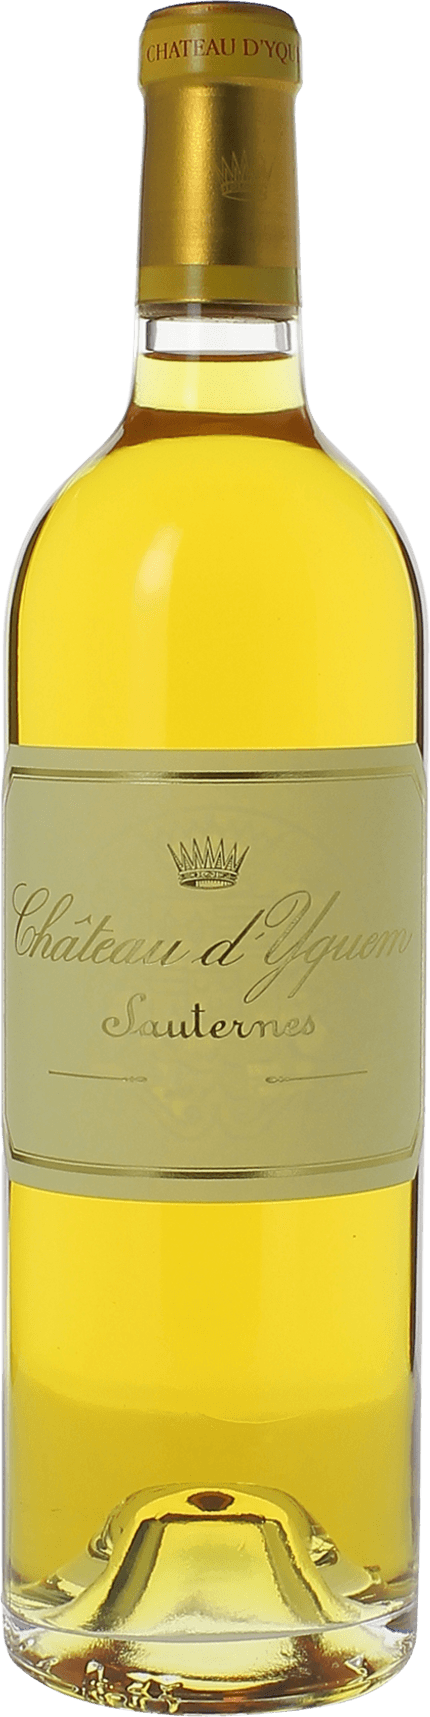 Yquem 1981 1er Grand cru class Sauternes, Bordeaux blanc